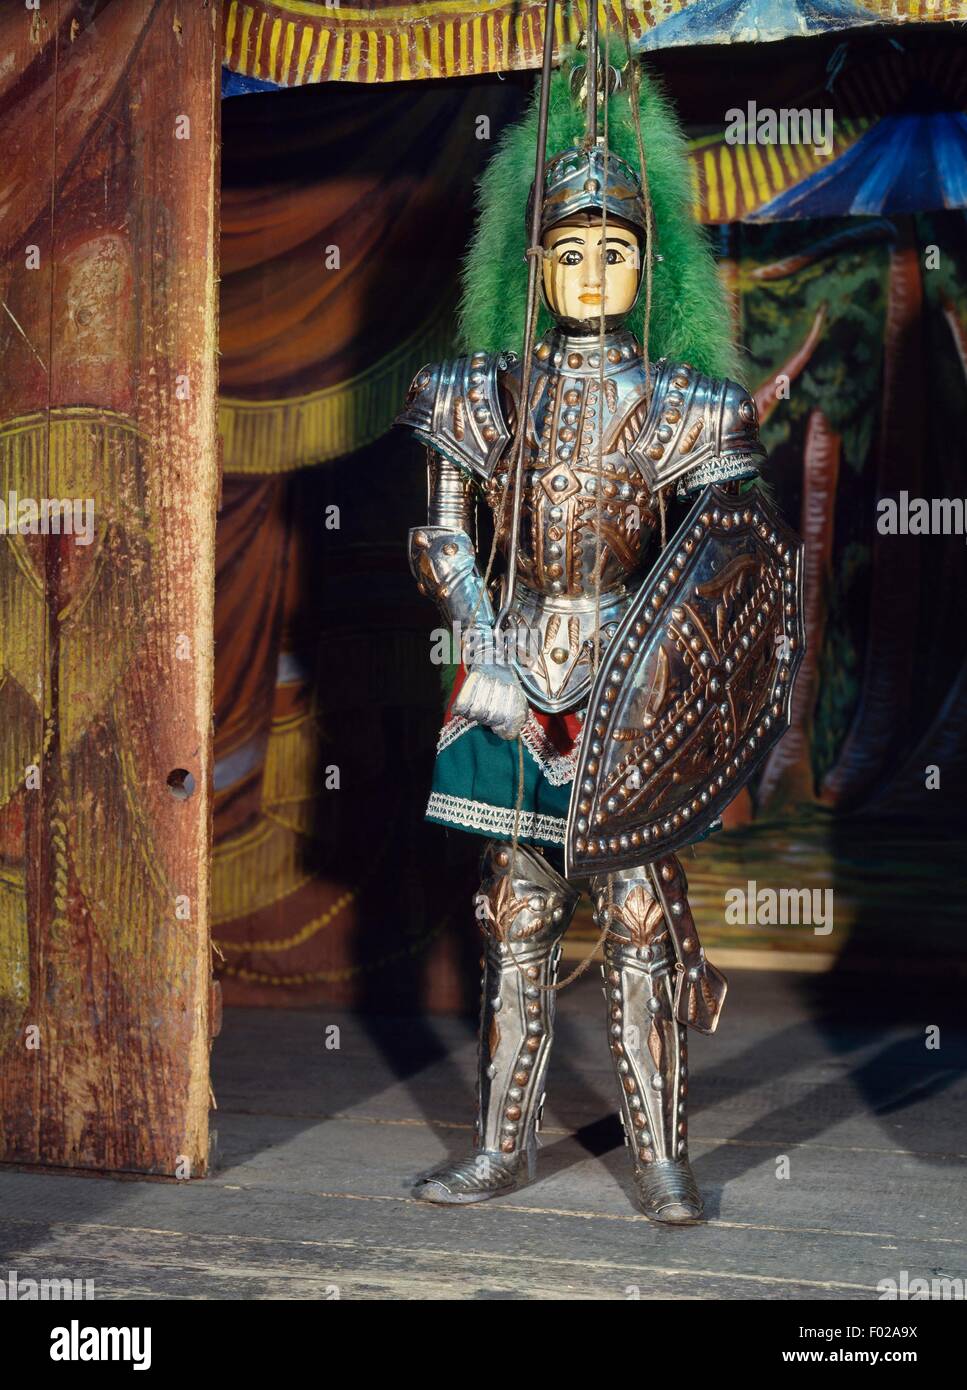 Marionnettes siciliennes, le Paladin Orlando, le théâtre de marionnettes marionnette, Sicile, Italie, l'opéra des marionnettes (UNESCO Chefs-d'oeuvre du patrimoine oral et immatériel de l'humanité, 2001). Banque D'Images